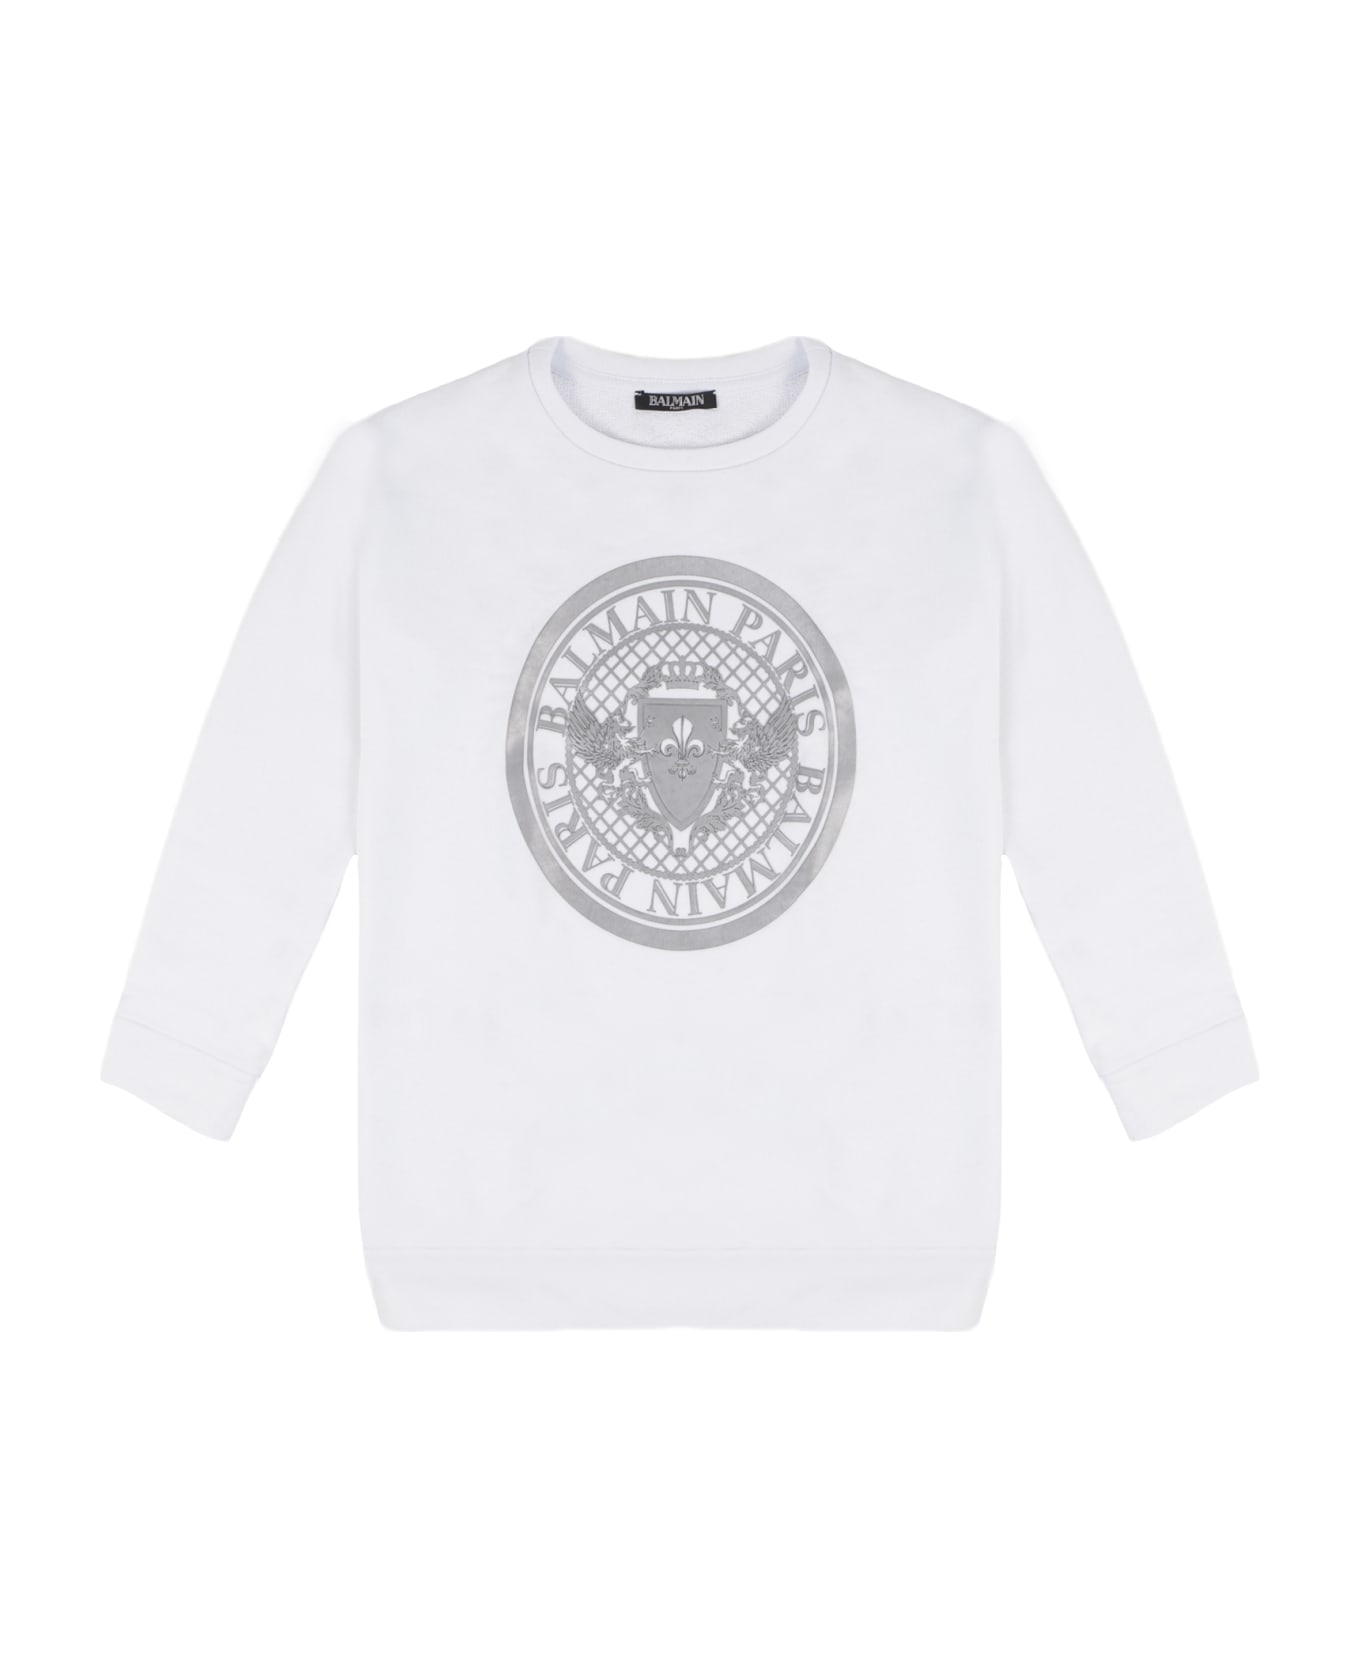 Balmain Cotton Sweatshirt - White